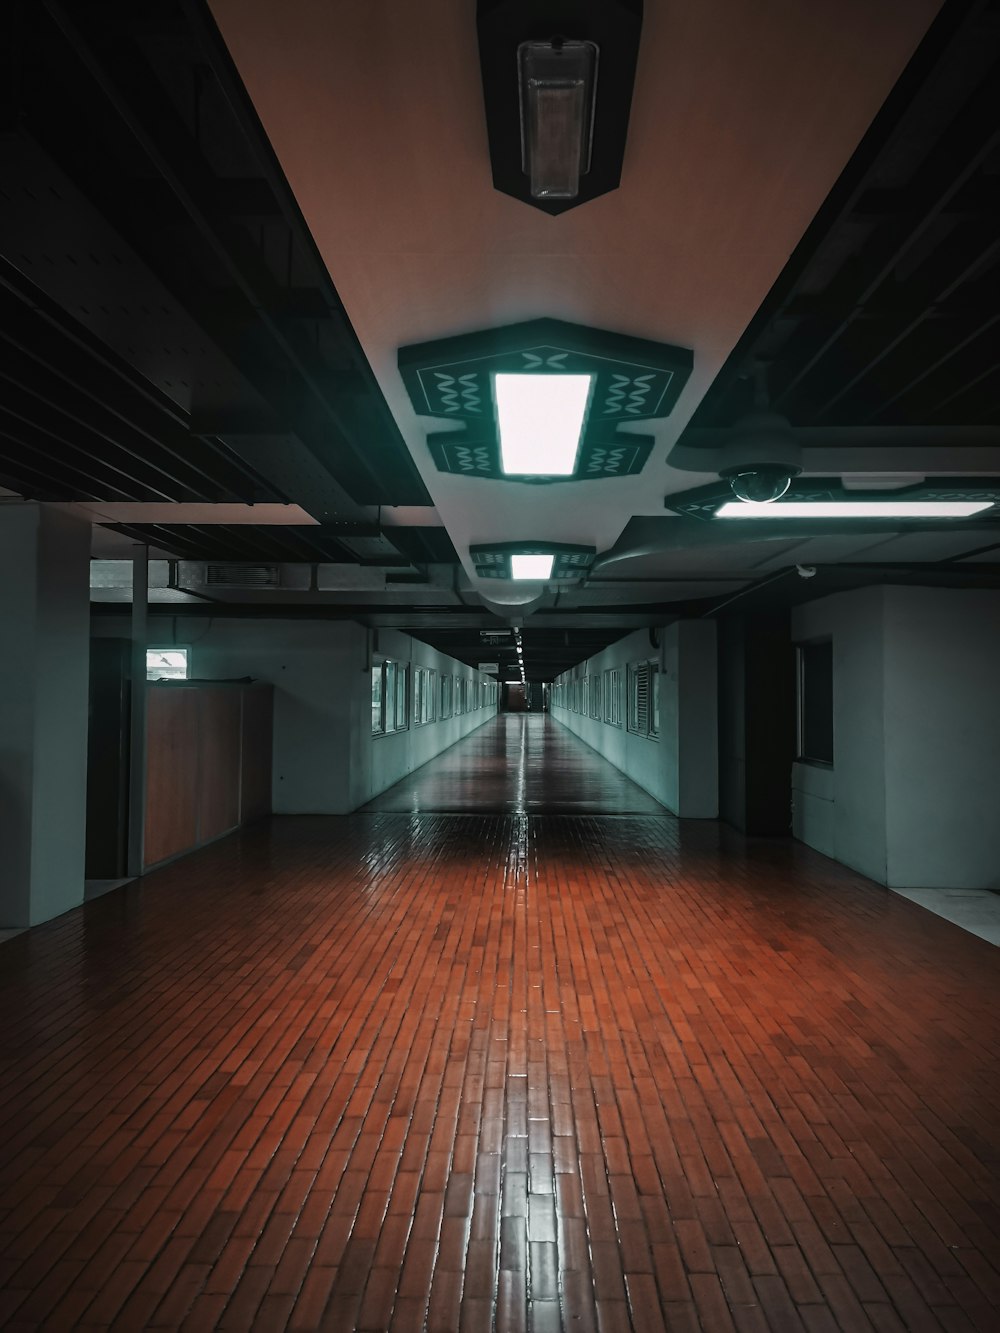 Un pasillo con una luz en el techo